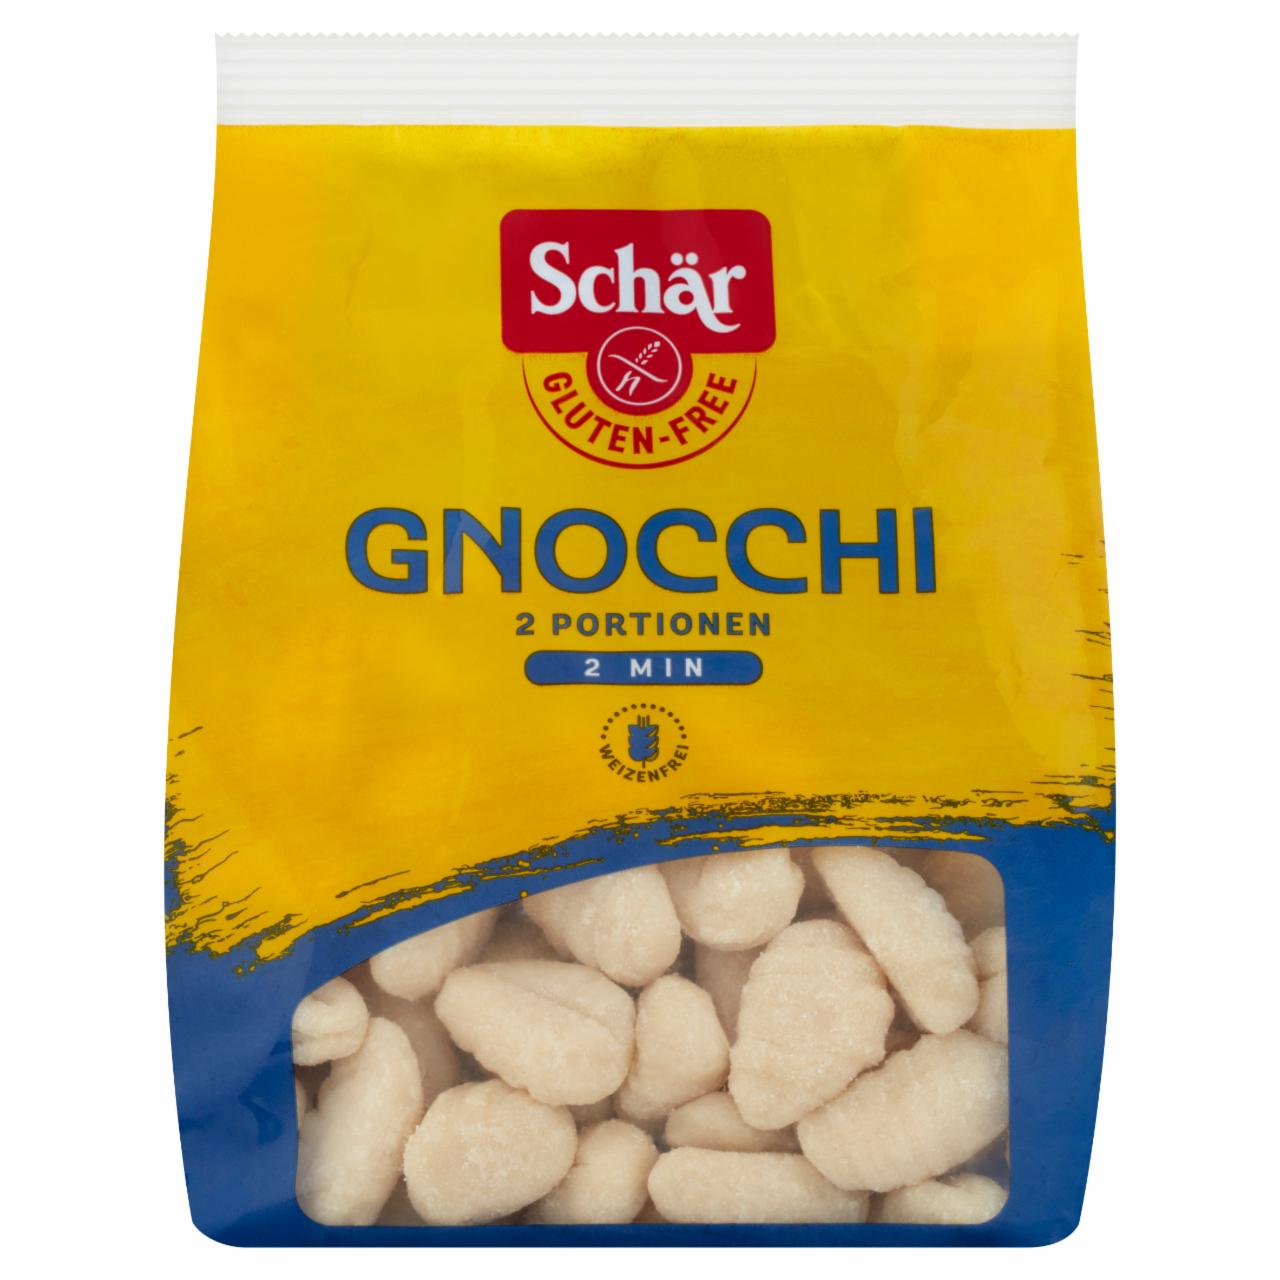 Képek - Schär Gnocchi gluténmentes burgonyás nudli 300 g